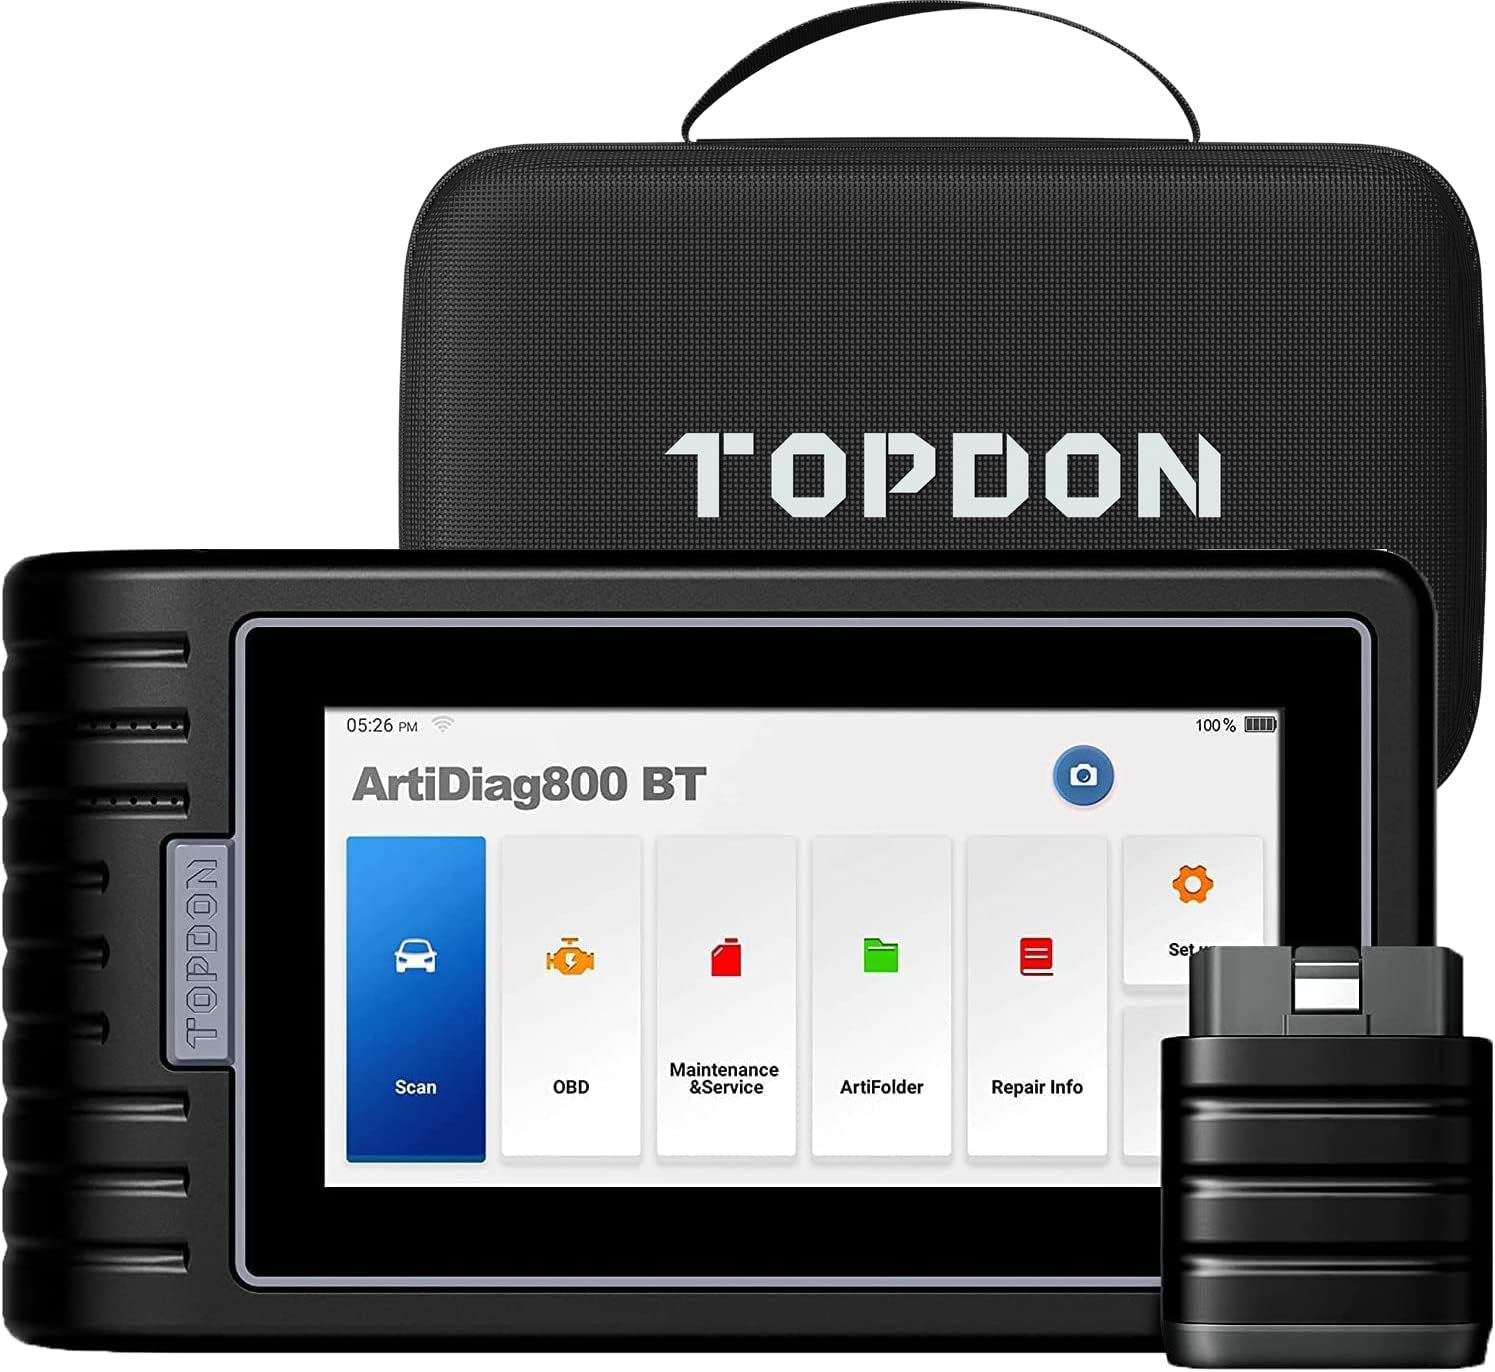 TOPDON Car Diagnostic Tool ArtiDiag800BT OBD2 Code Reader - 8374